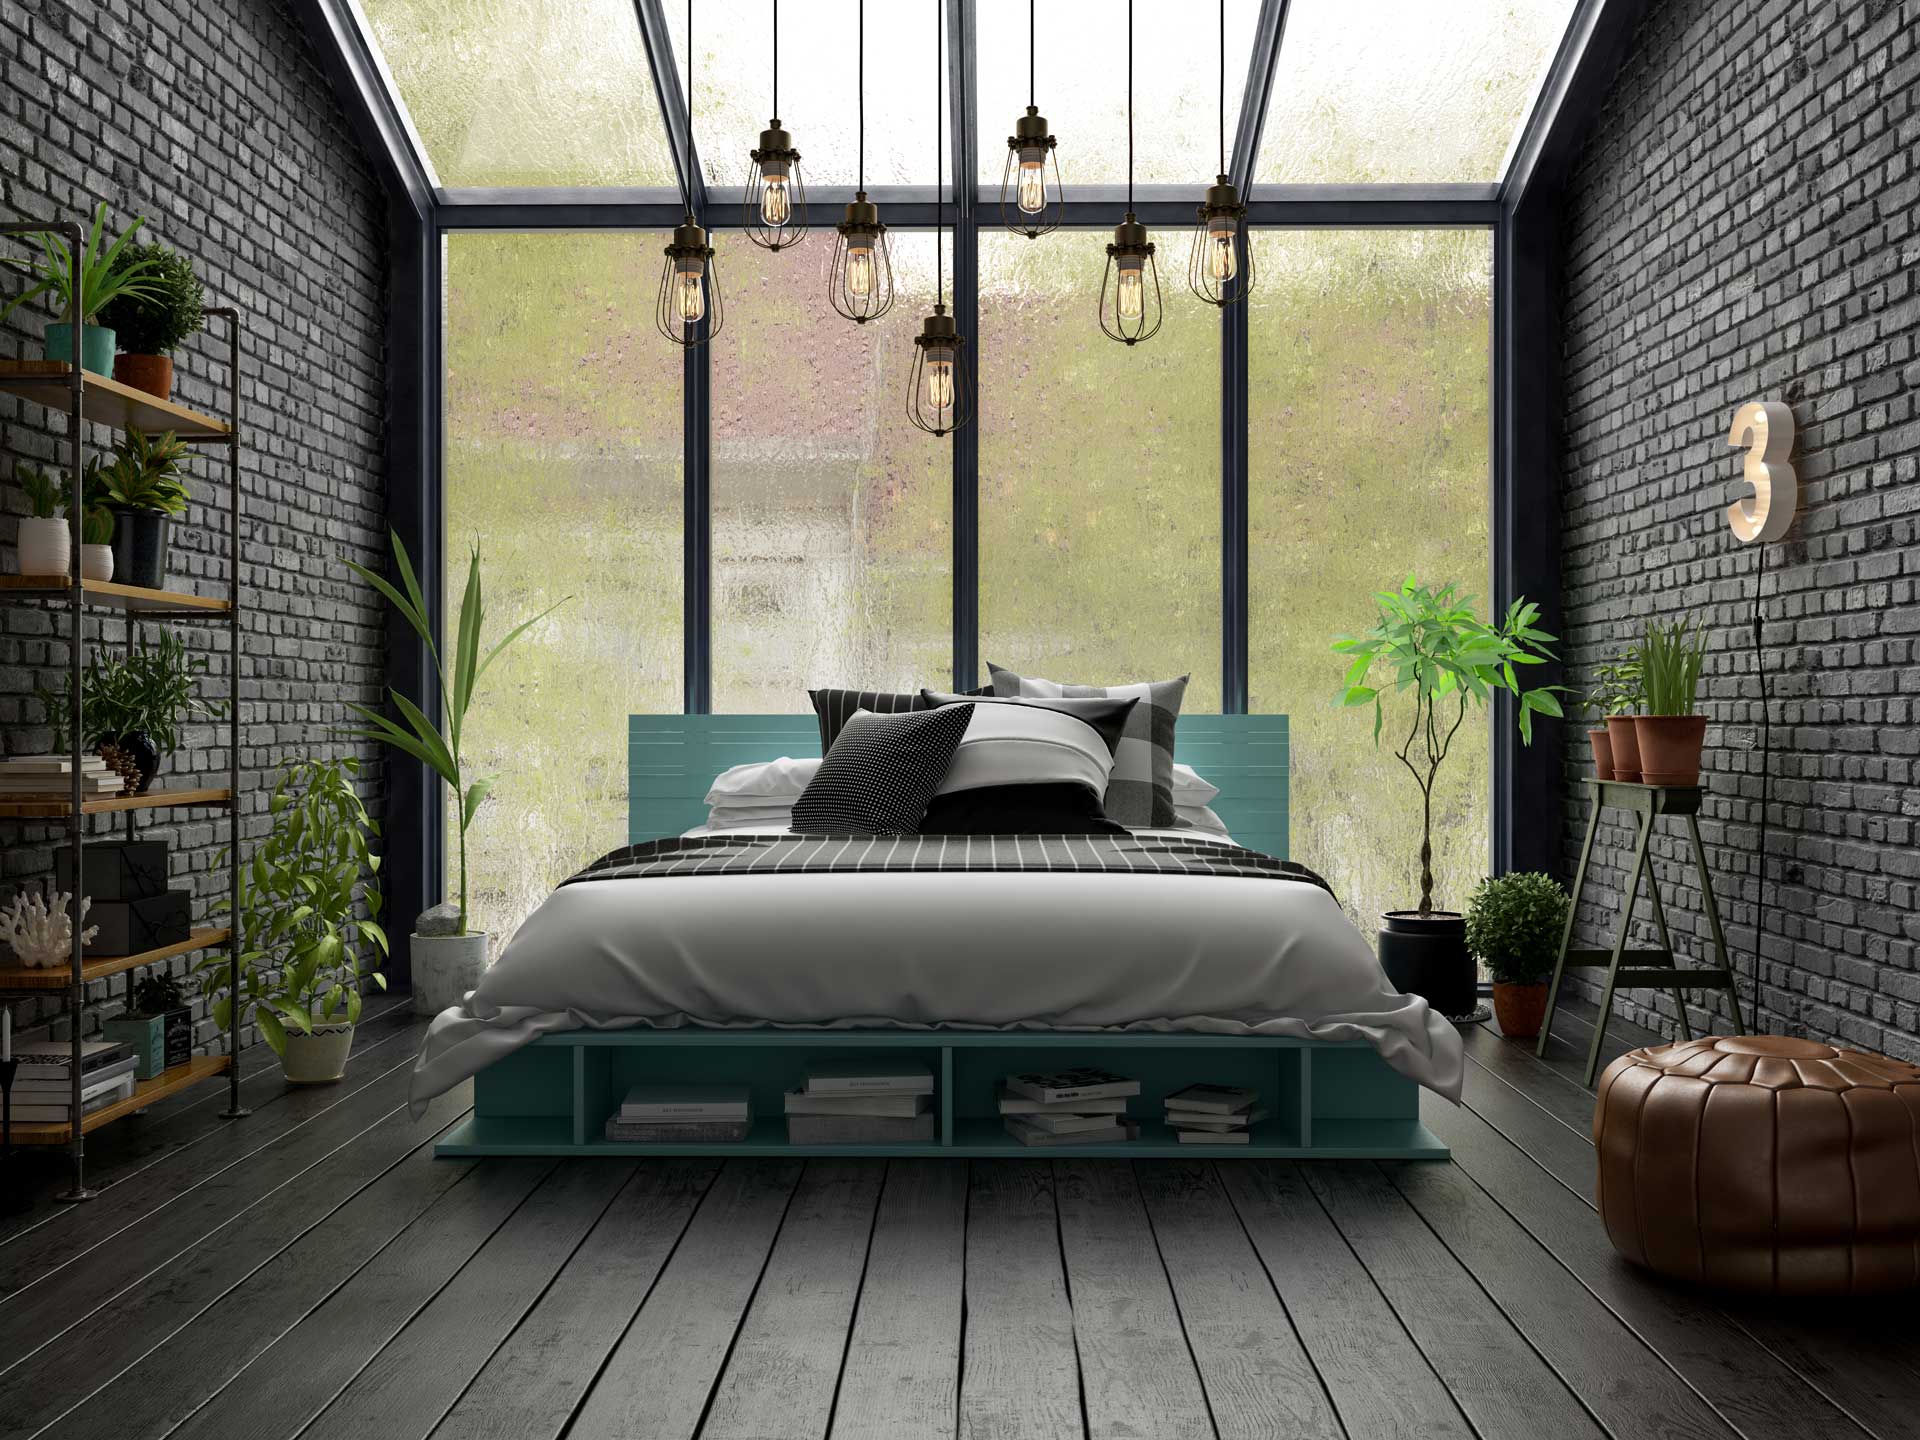 bedroom-interior-design-3d-rendering-VMKBAEZ.jpg